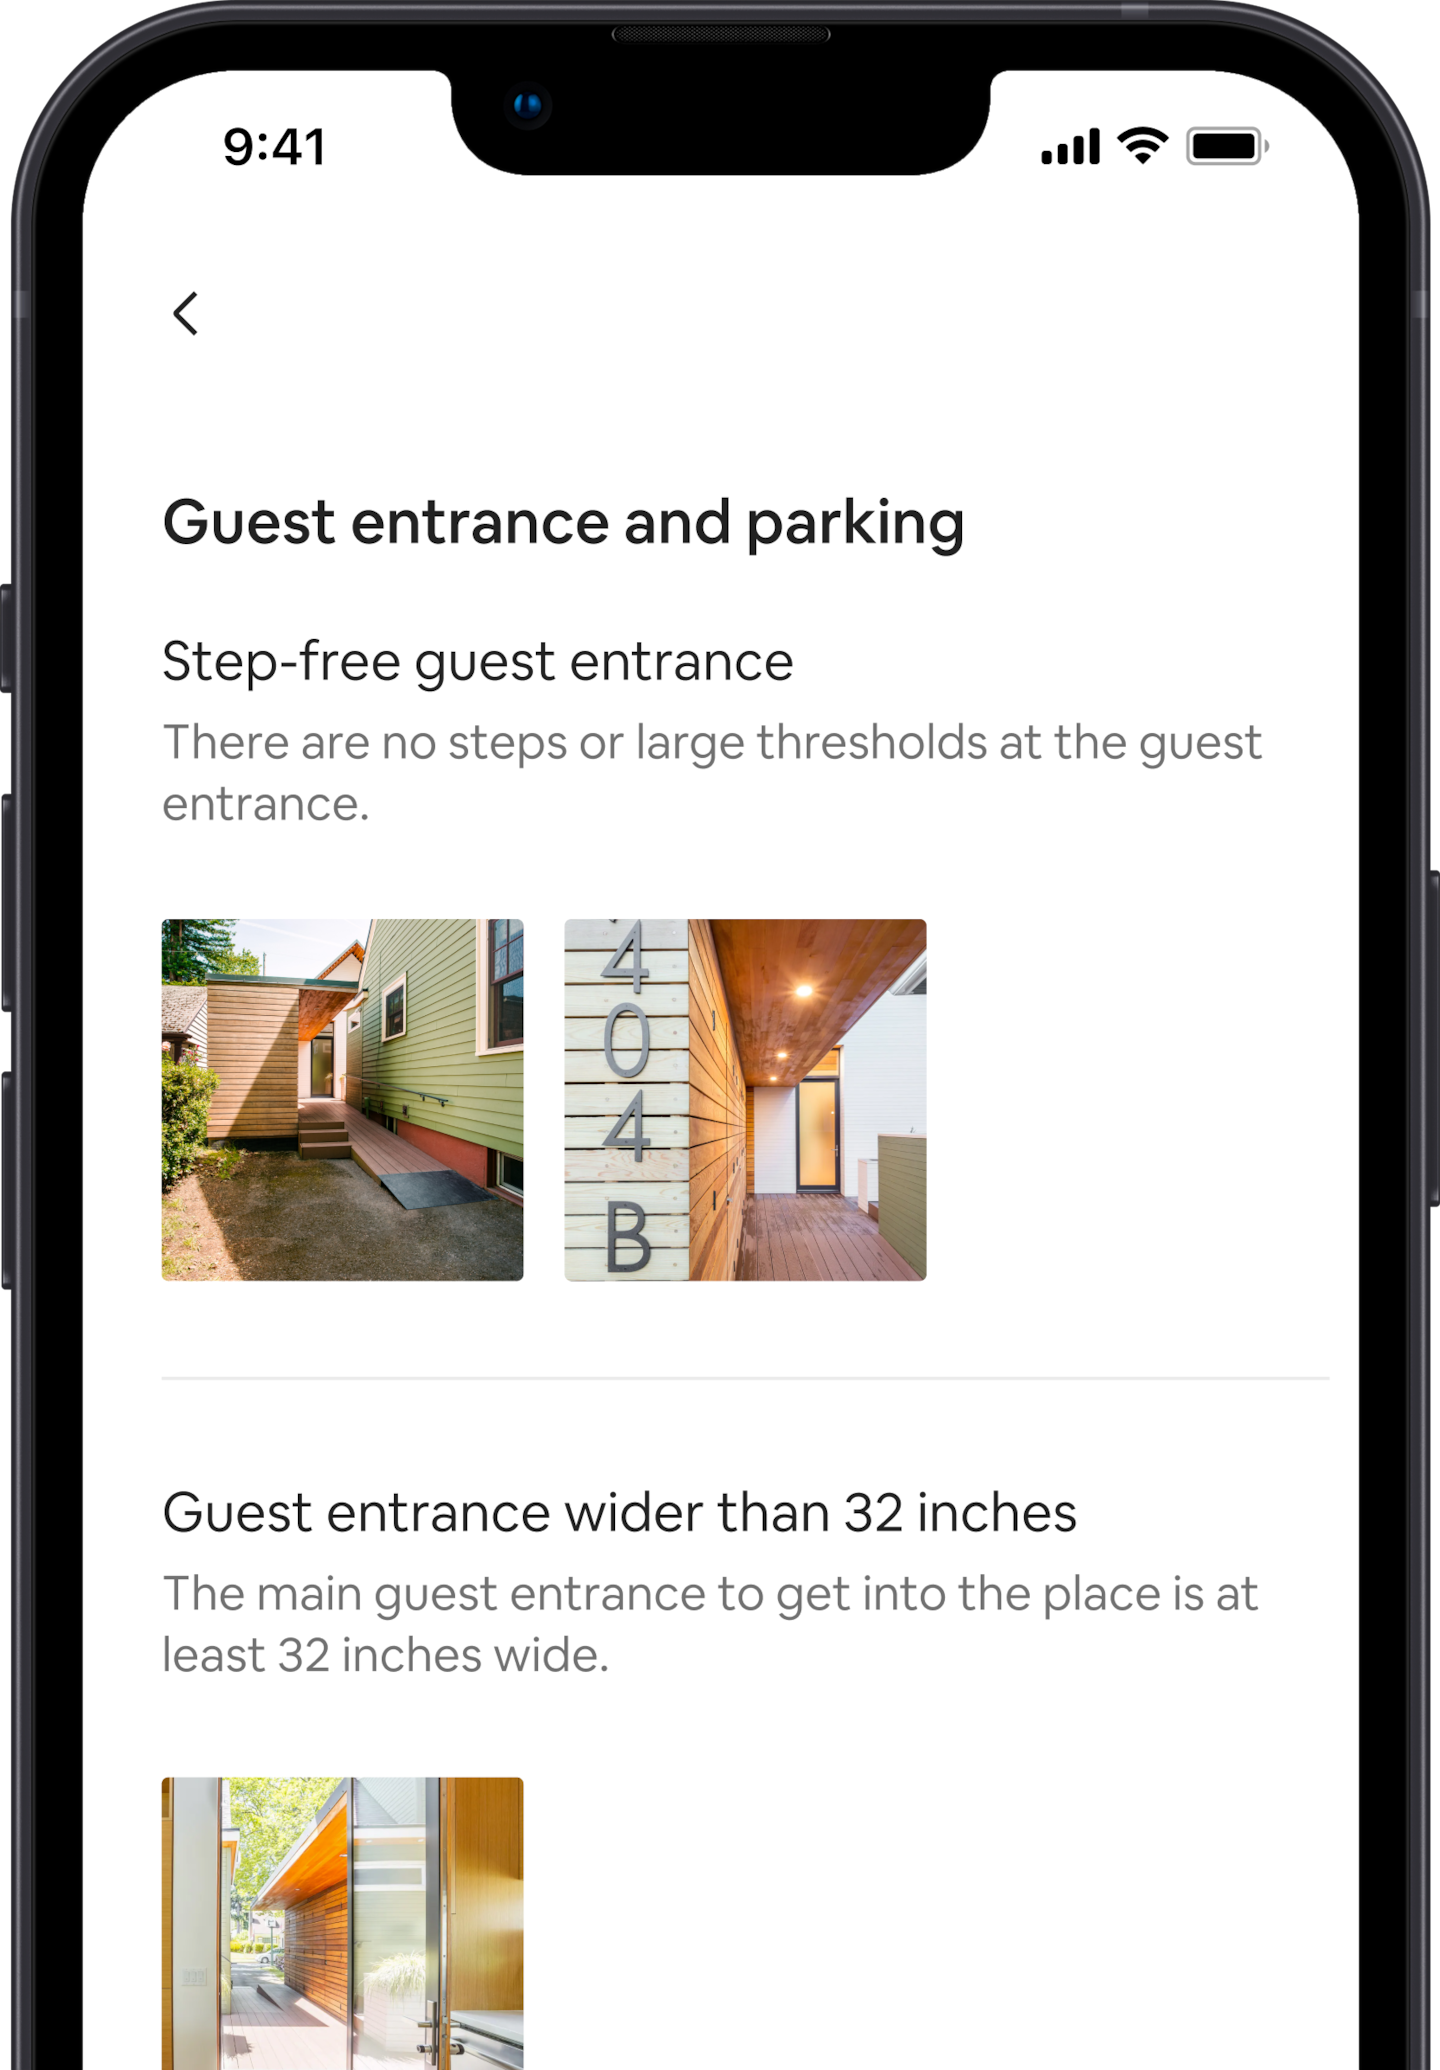 手機螢幕上顯示一間 Airbnb 房源的無障礙設施與服務項目。第一項設施是「無障礙房客入口」，下方則是該設施的圖片。繼續往下瀏覽是另一項無障礙設施，標註「房客入口寬度超過 81 公分」，下方則是該設施的圖片。